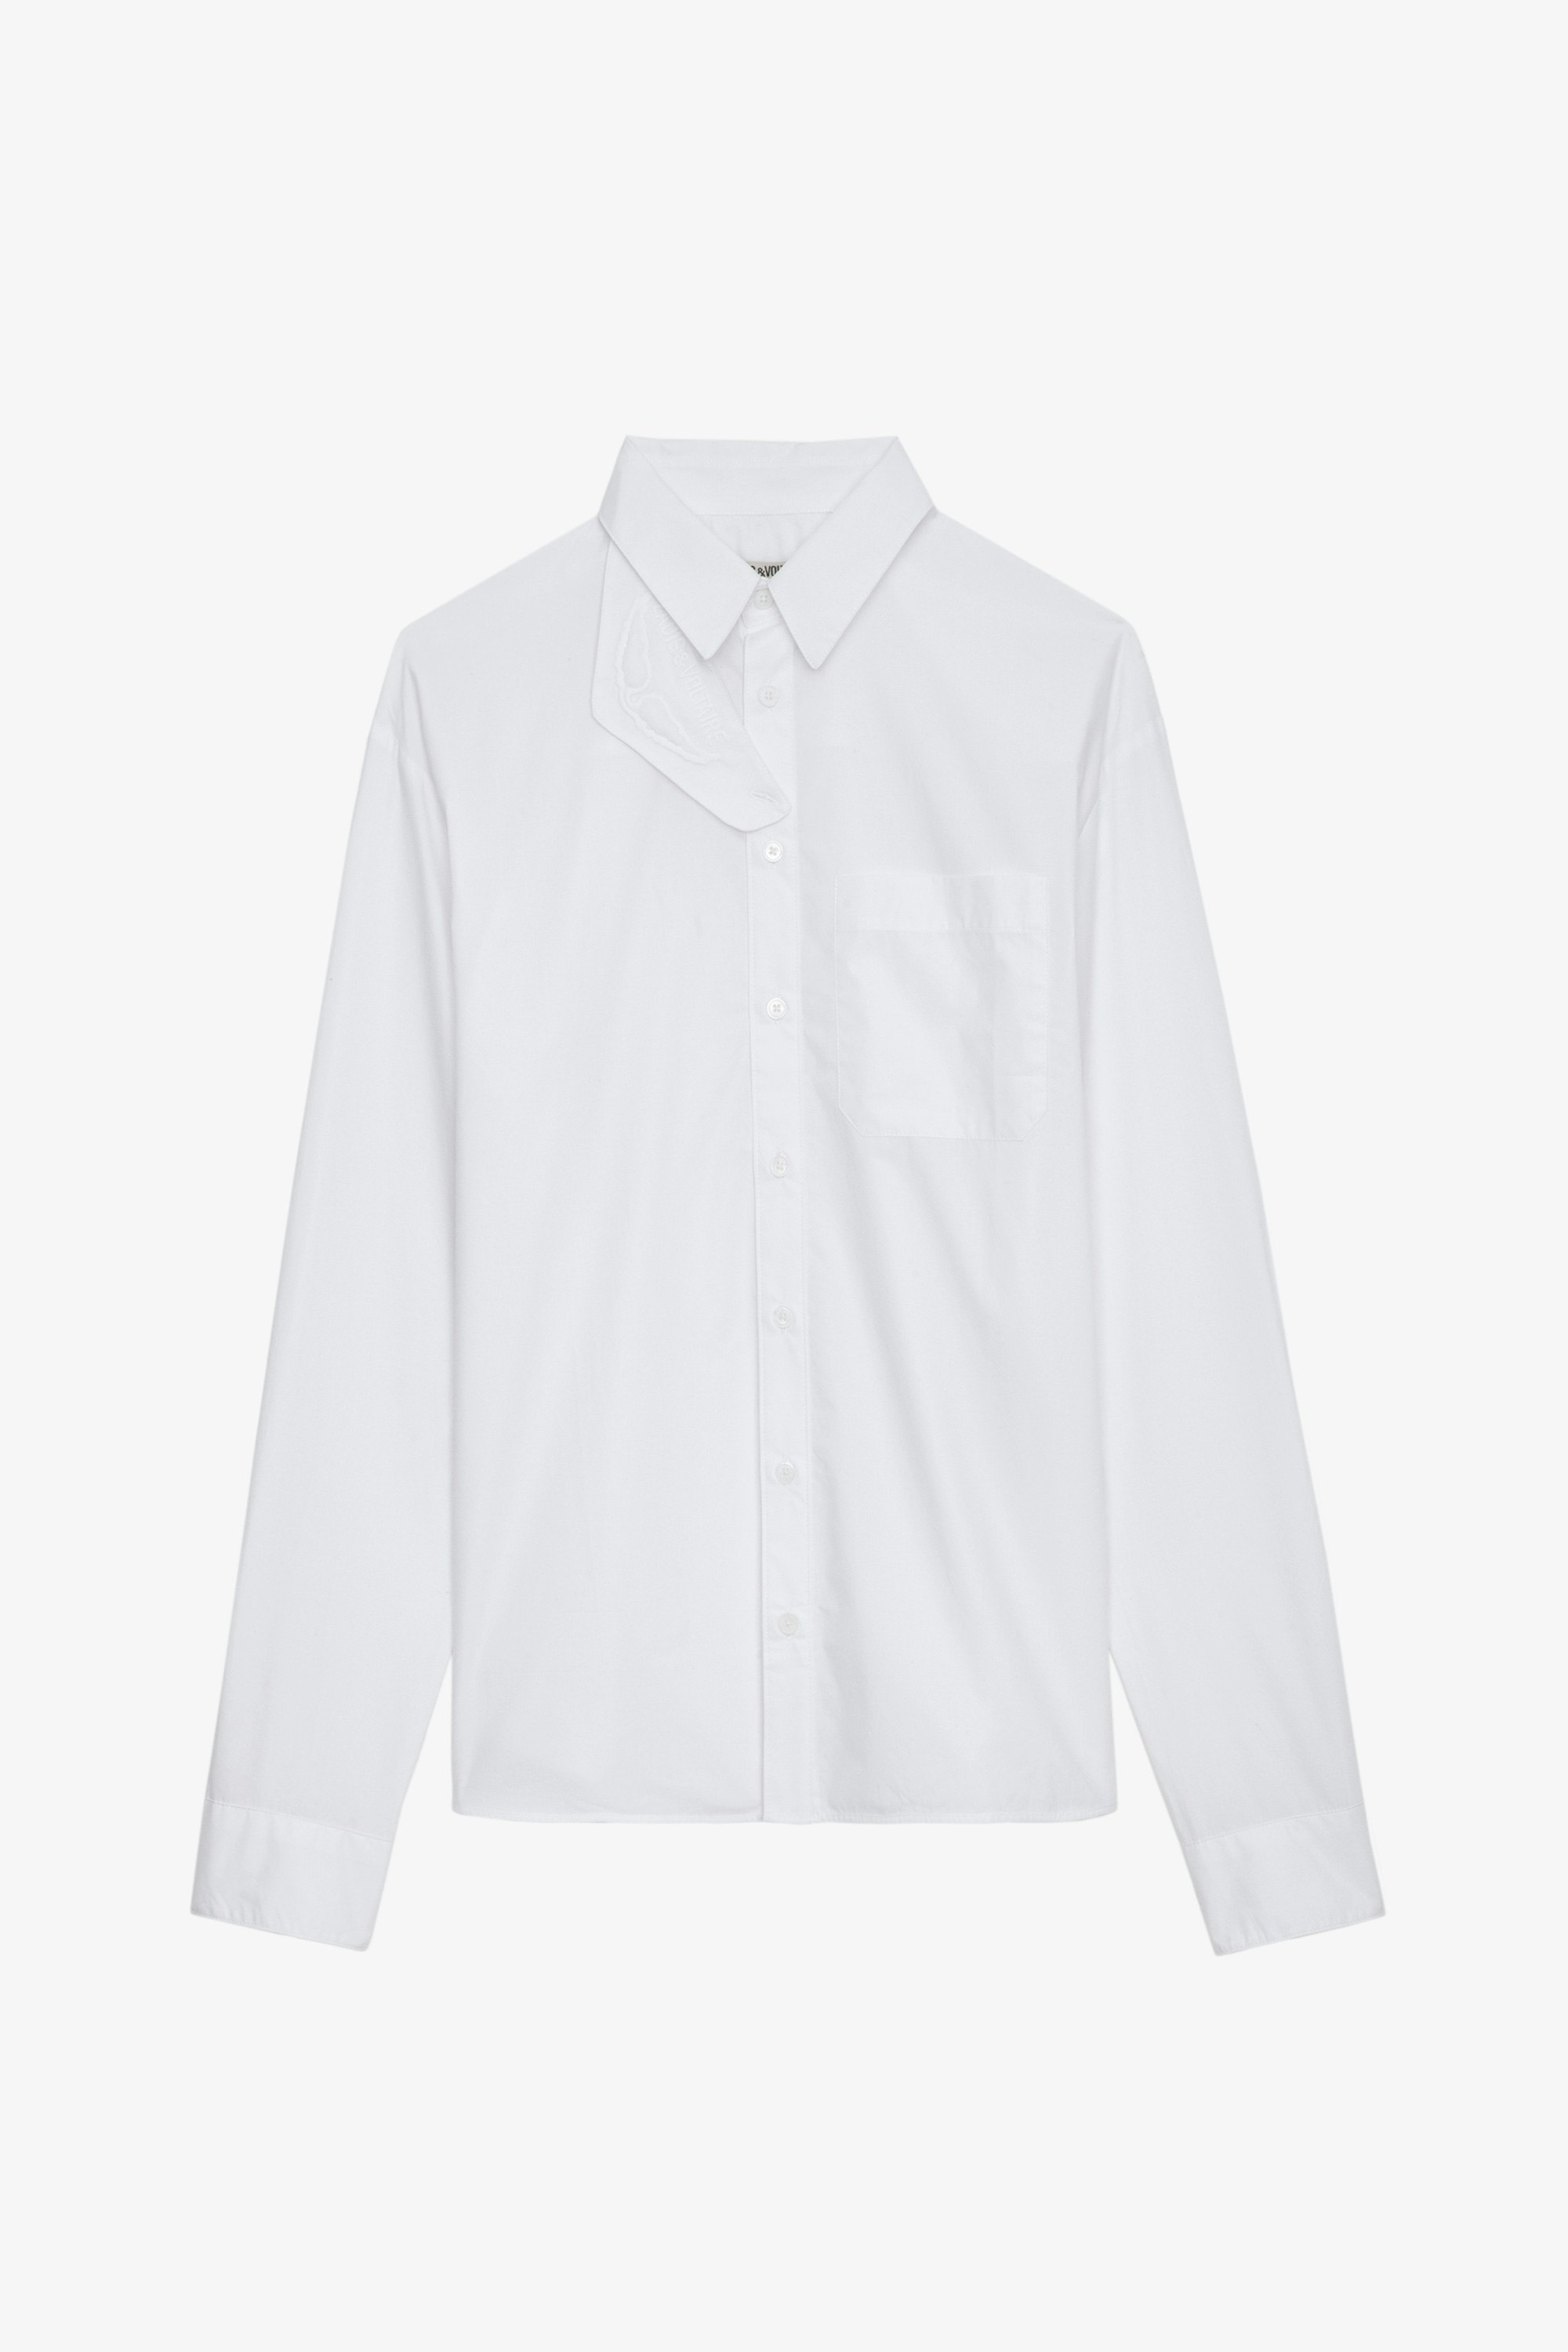 Hemd Tyrone - Langes, weißes Hemd aus Baumwolle zum Knöpfen mit Taschen und abnehmbarem Schutzkragen.